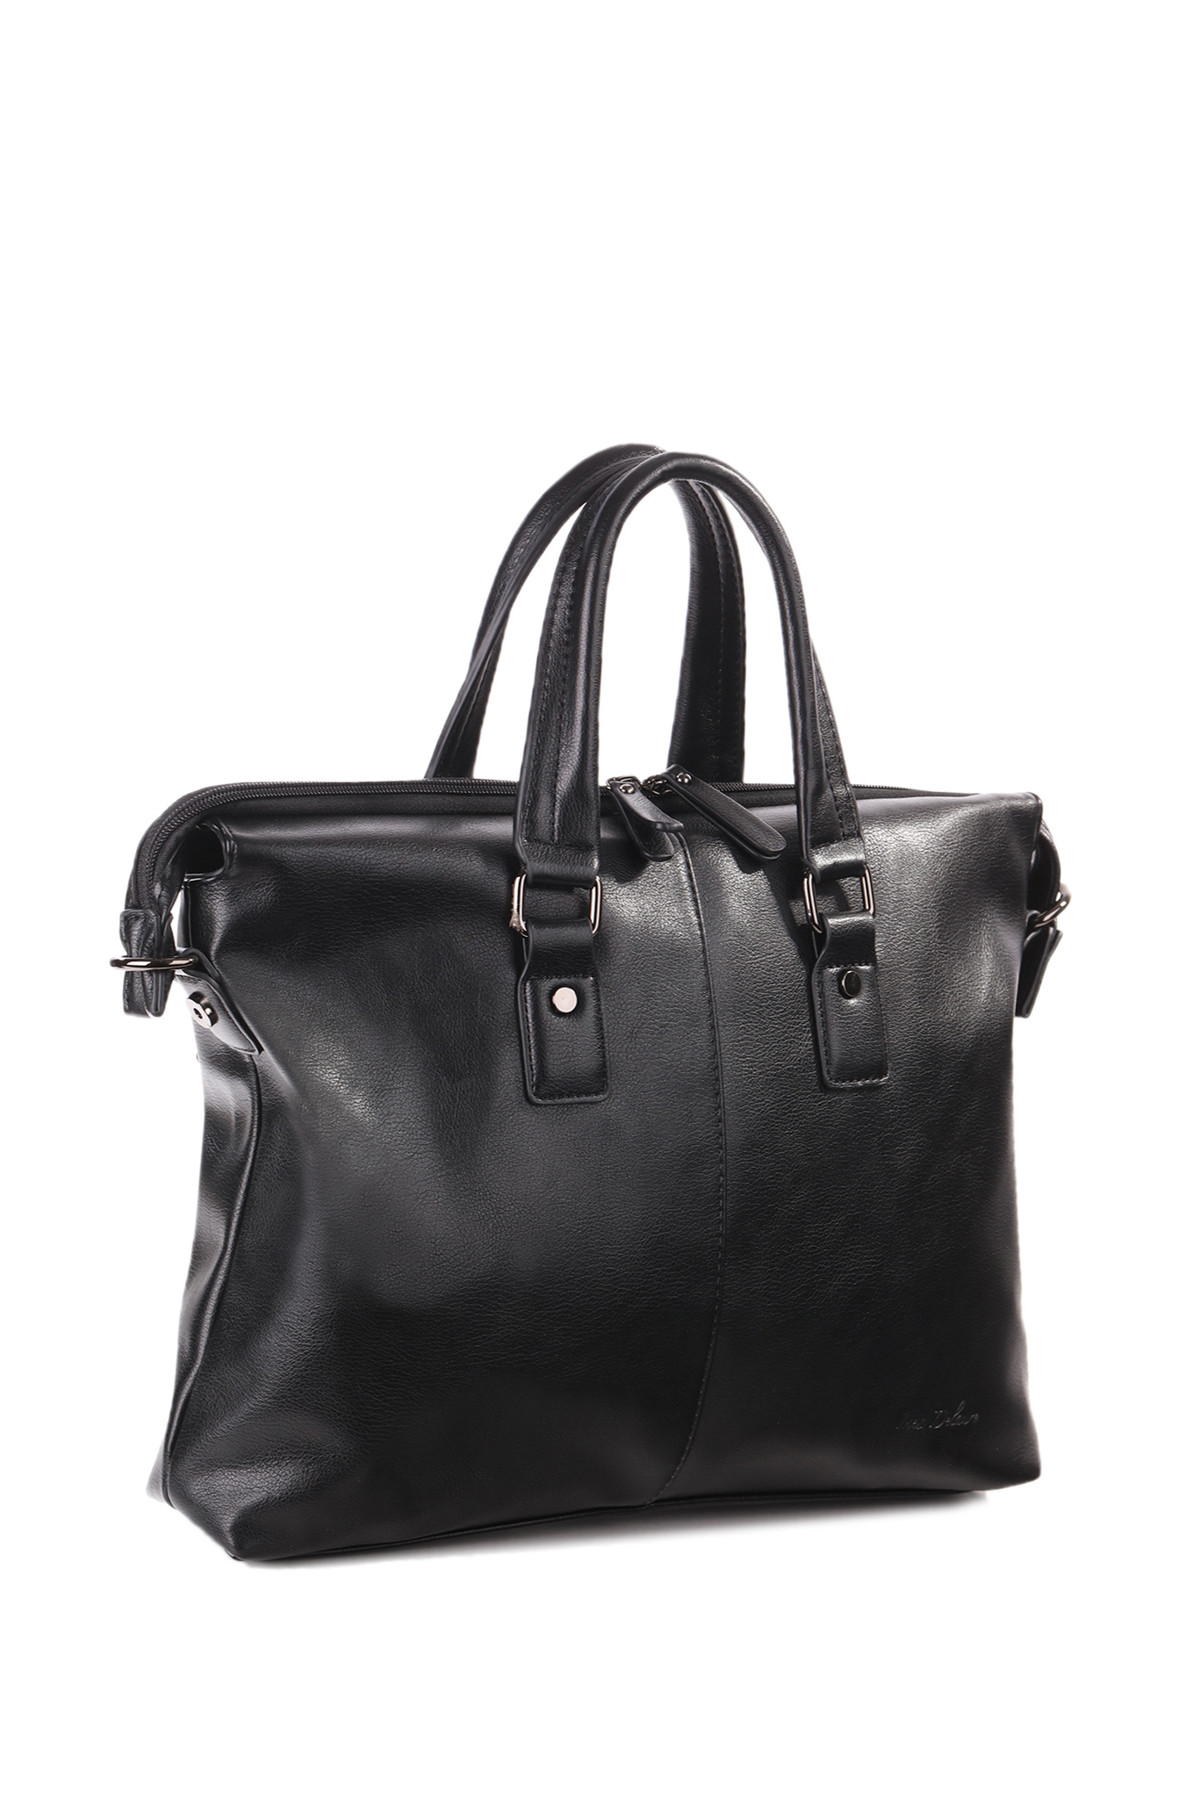 Ladies Briefcase laptop bag, Ladies work bag - Udara London